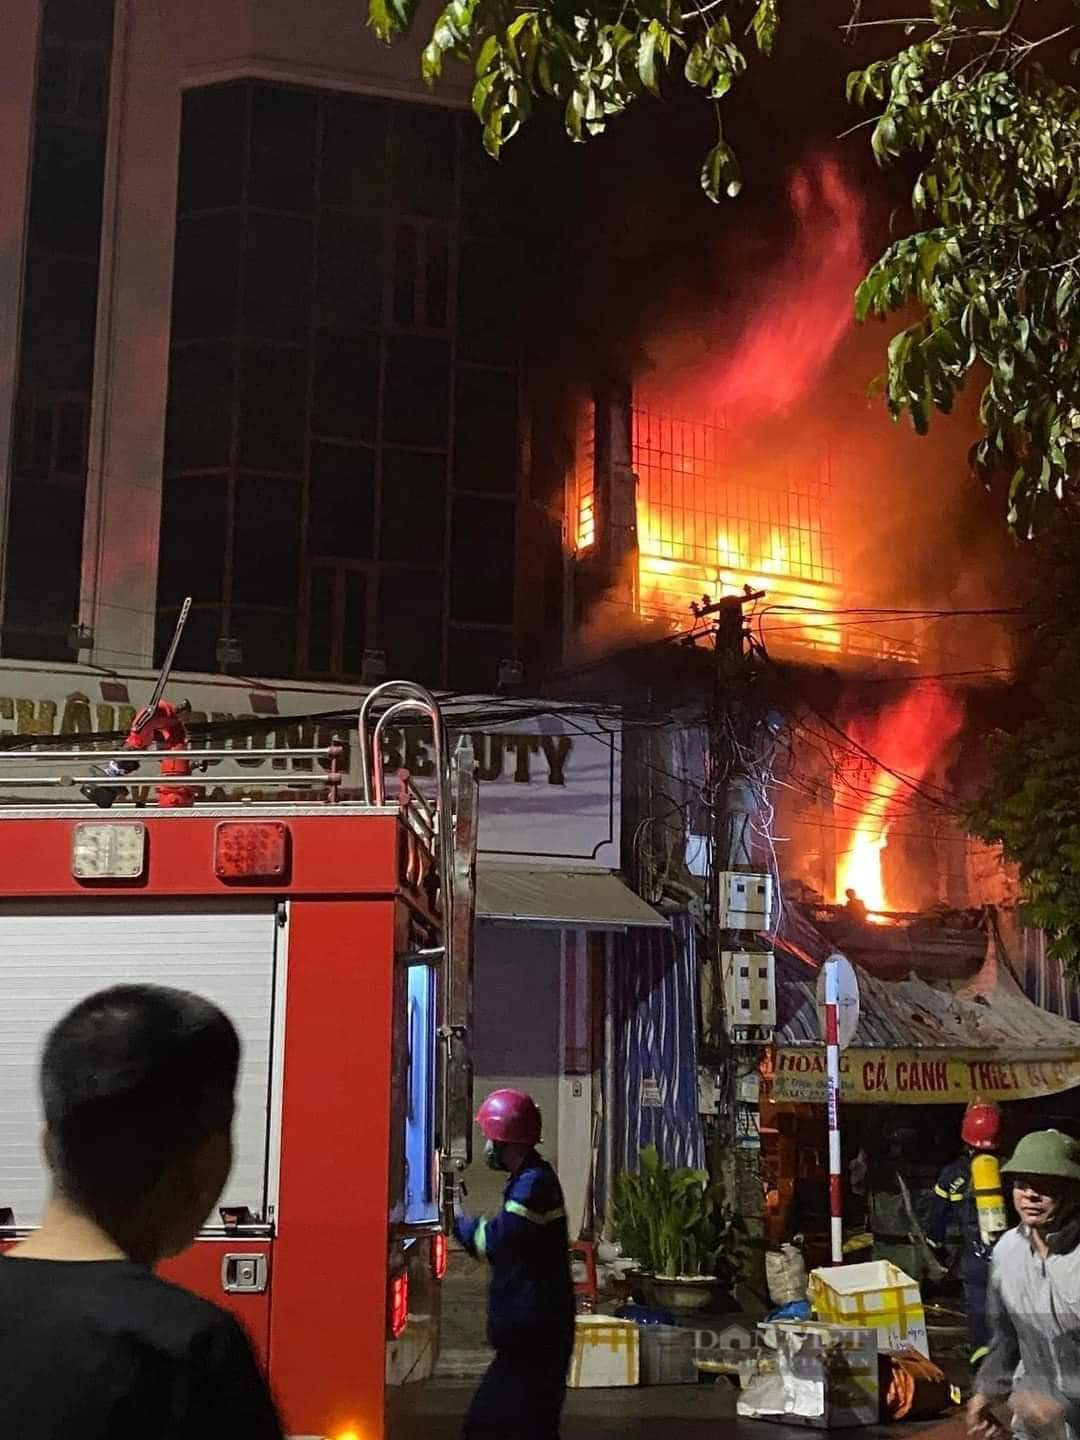 Phó Thủ tướng Thường trực yêu cầu khẩn trương điều tra làm rõ nguyên nhân vụ cháy làm 3 người tử vong ở Thanh Hóa - Ảnh 1.